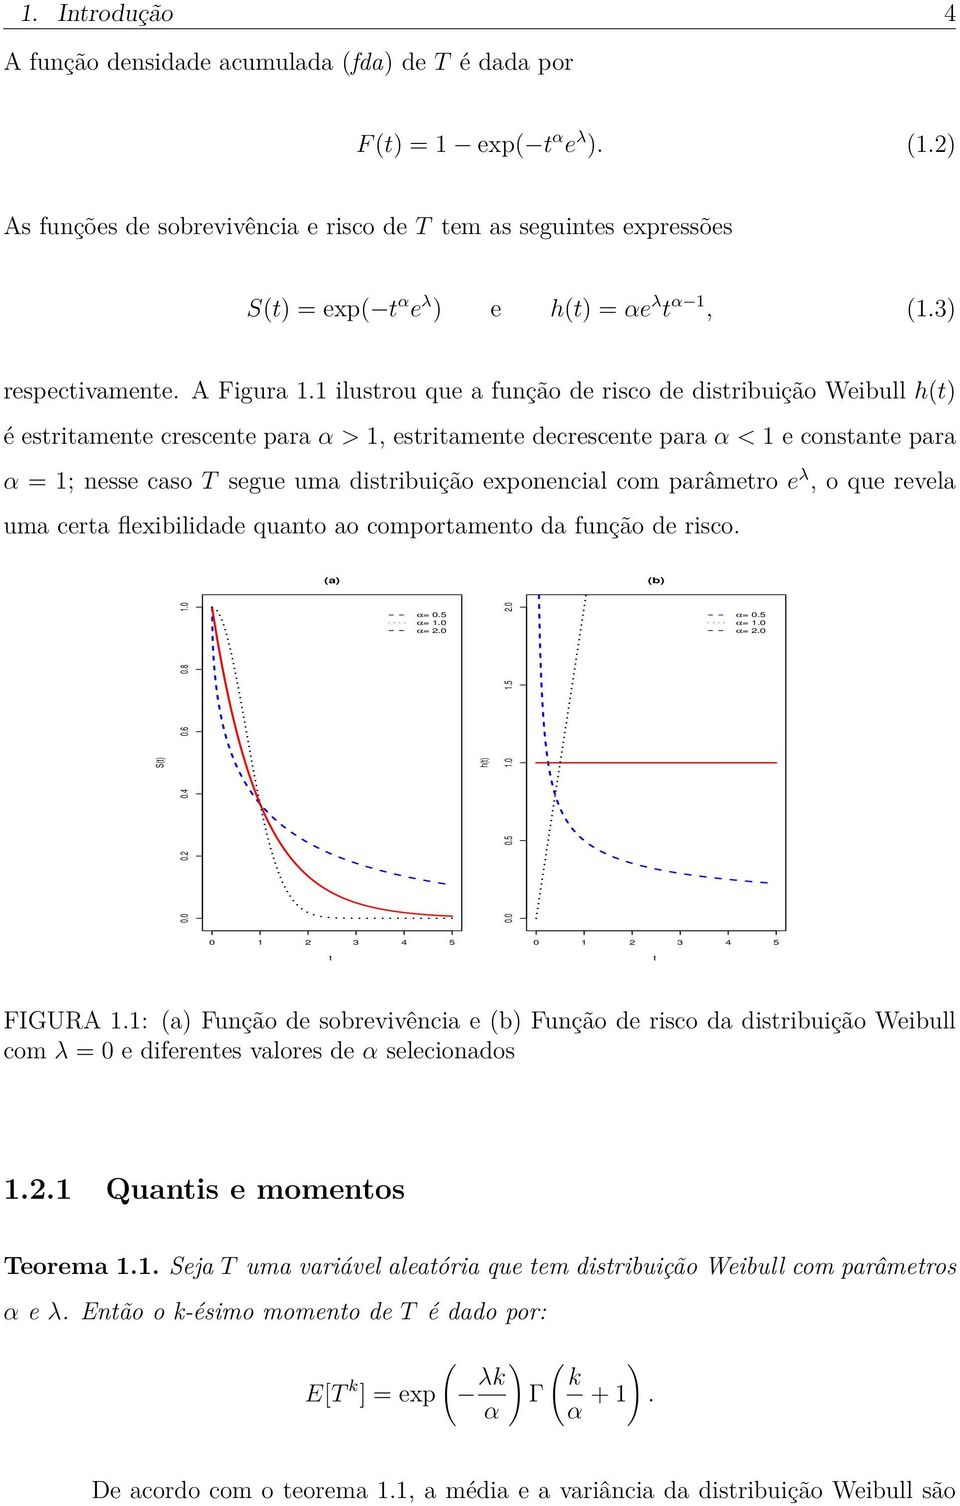 1 ilustrou que a função de risco de distribuição Weibull h(t) é estritamente crescente para α > 1, estritamente decrescente para α < 1 e constante para α = 1; nesse caso T segue uma distribuição